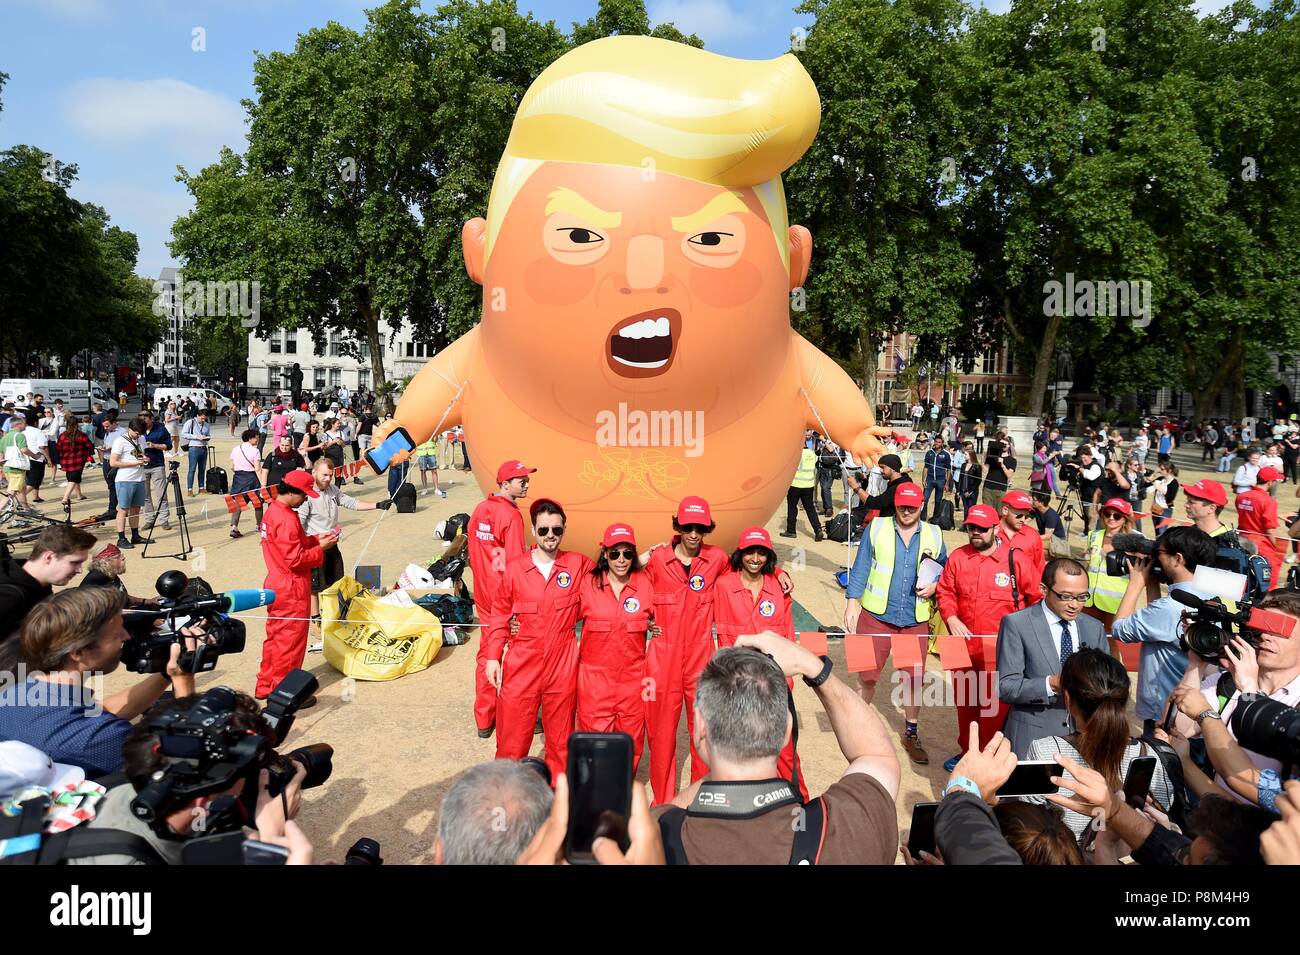 Un globo de seis metros representando como Presidente estadounidense Donald Trump naranja revestido de pañales de bebé a través de la Plaza del Parlamento británico durante la visita del presidente. Crédito: Finnbarr Webster/Alamy Live News Foto de stock